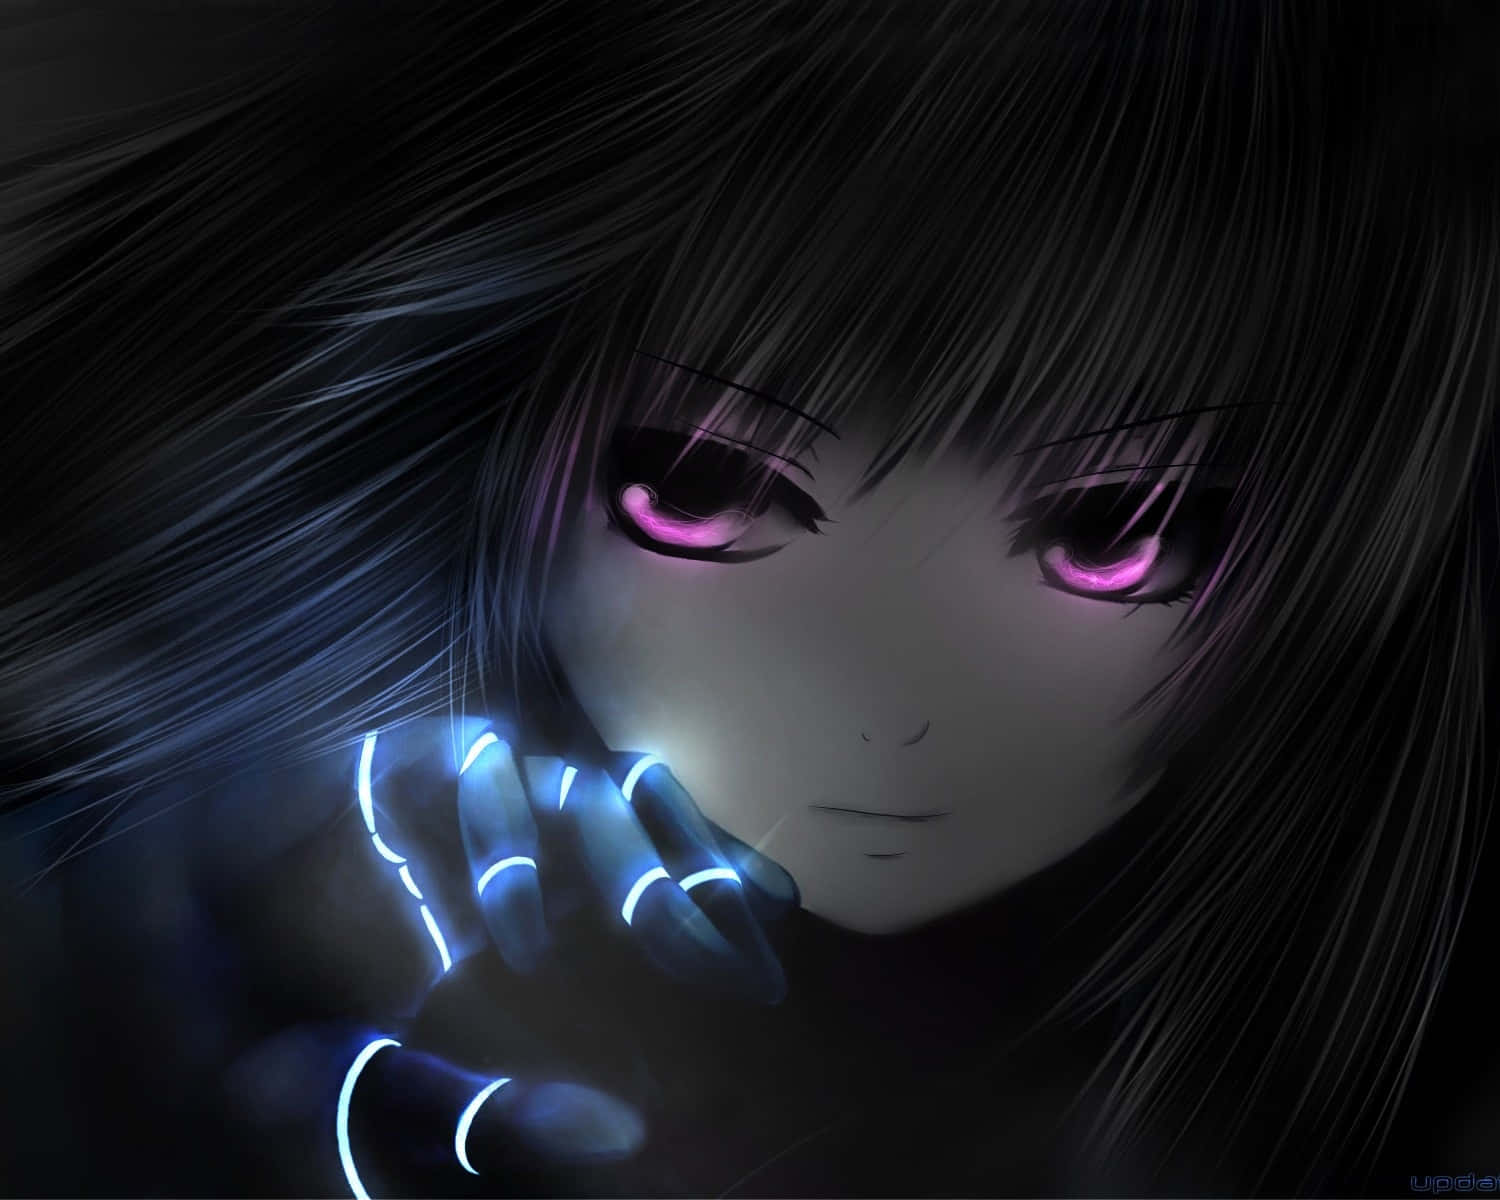 Tollesbild Einer Anime-girl Mit Lila Augen.